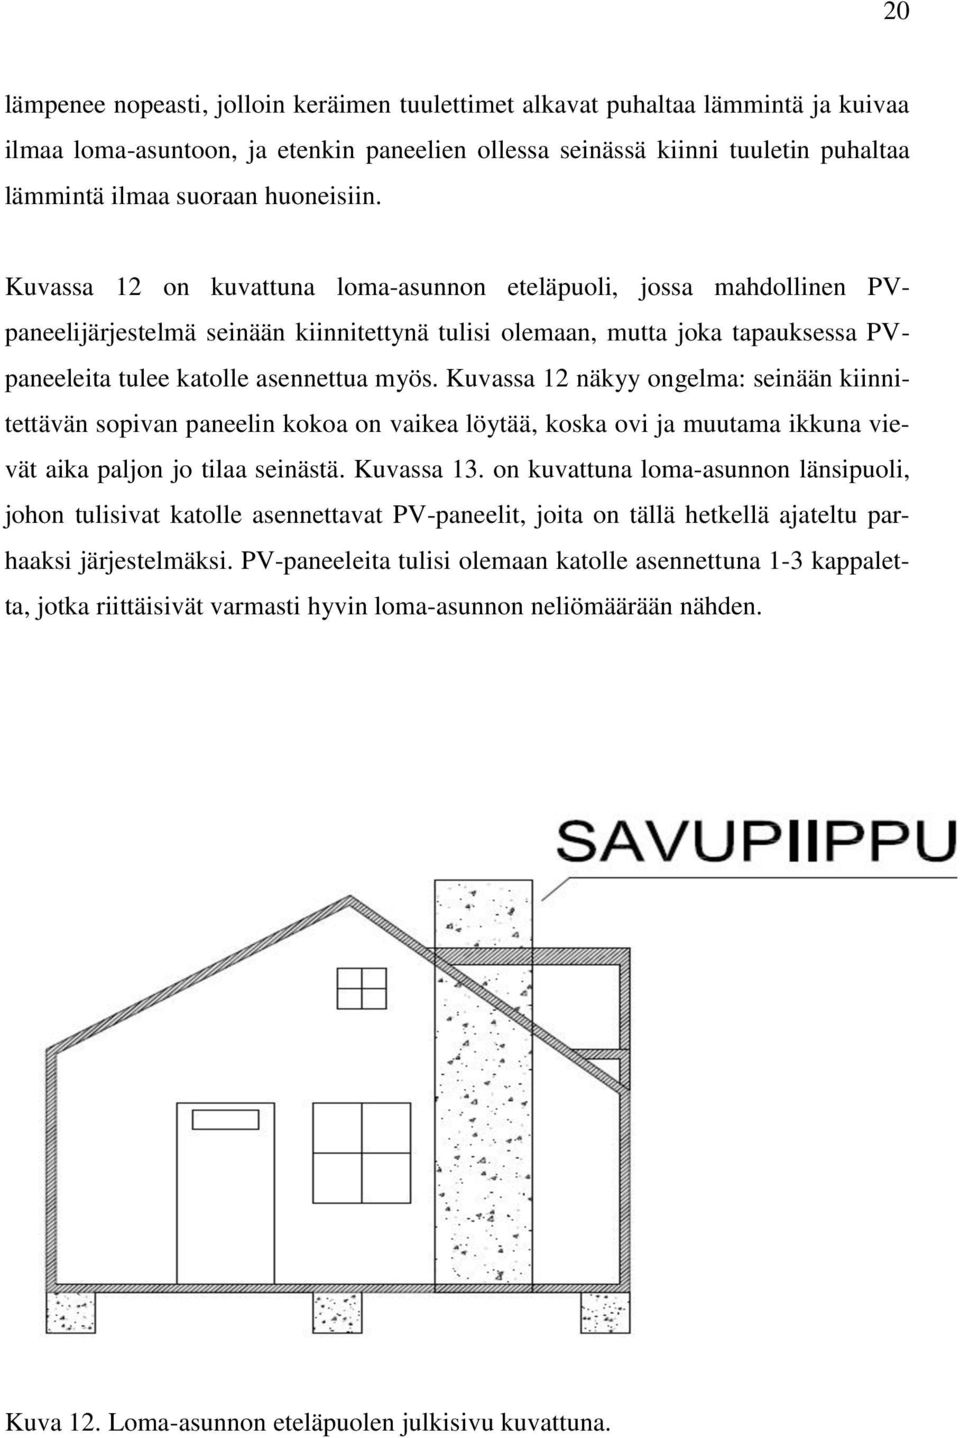 Kuvassa 12 on kuvattuna loma-asunnon eteläpuoli, jossa mahdollinen PVpaneelijärjestelmä seinään kiinnitettynä tulisi olemaan, mutta joka tapauksessa PVpaneeleita tulee katolle asennettua myös.